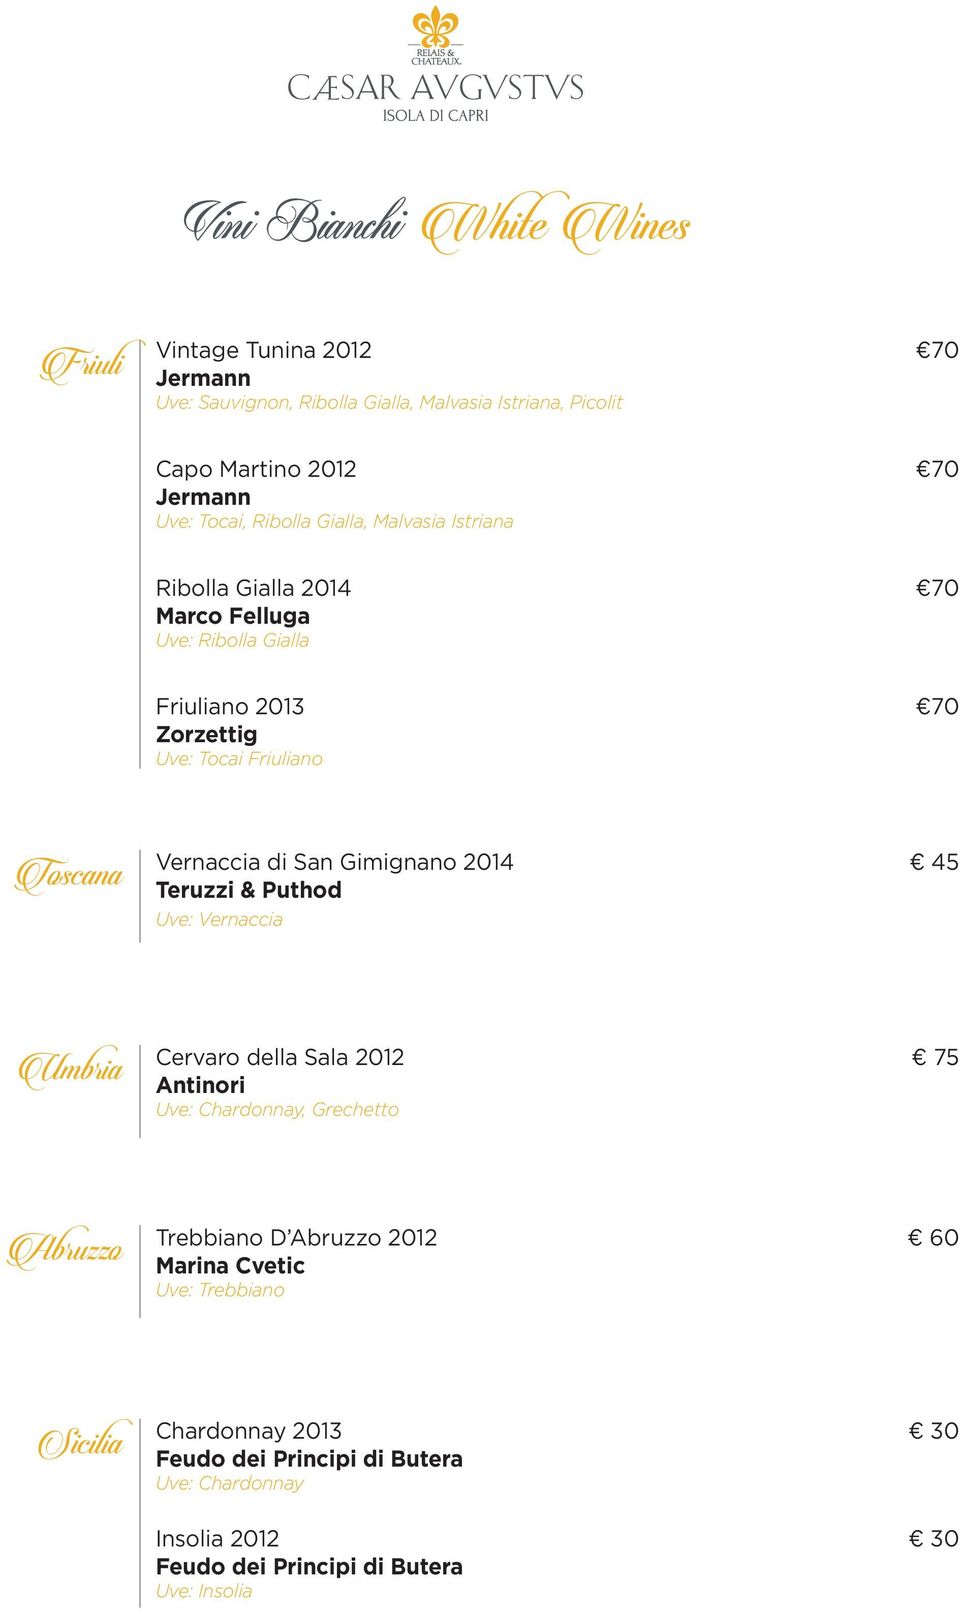 Vernaccia di San Gimignano 2014 45 Teruzzi & Puthod Uve: Vernaccia Umbria Cervaro della Sala 2012 75 Antinori Uve: Chardonnay, Grechetto Abruzzo Trebbiano D